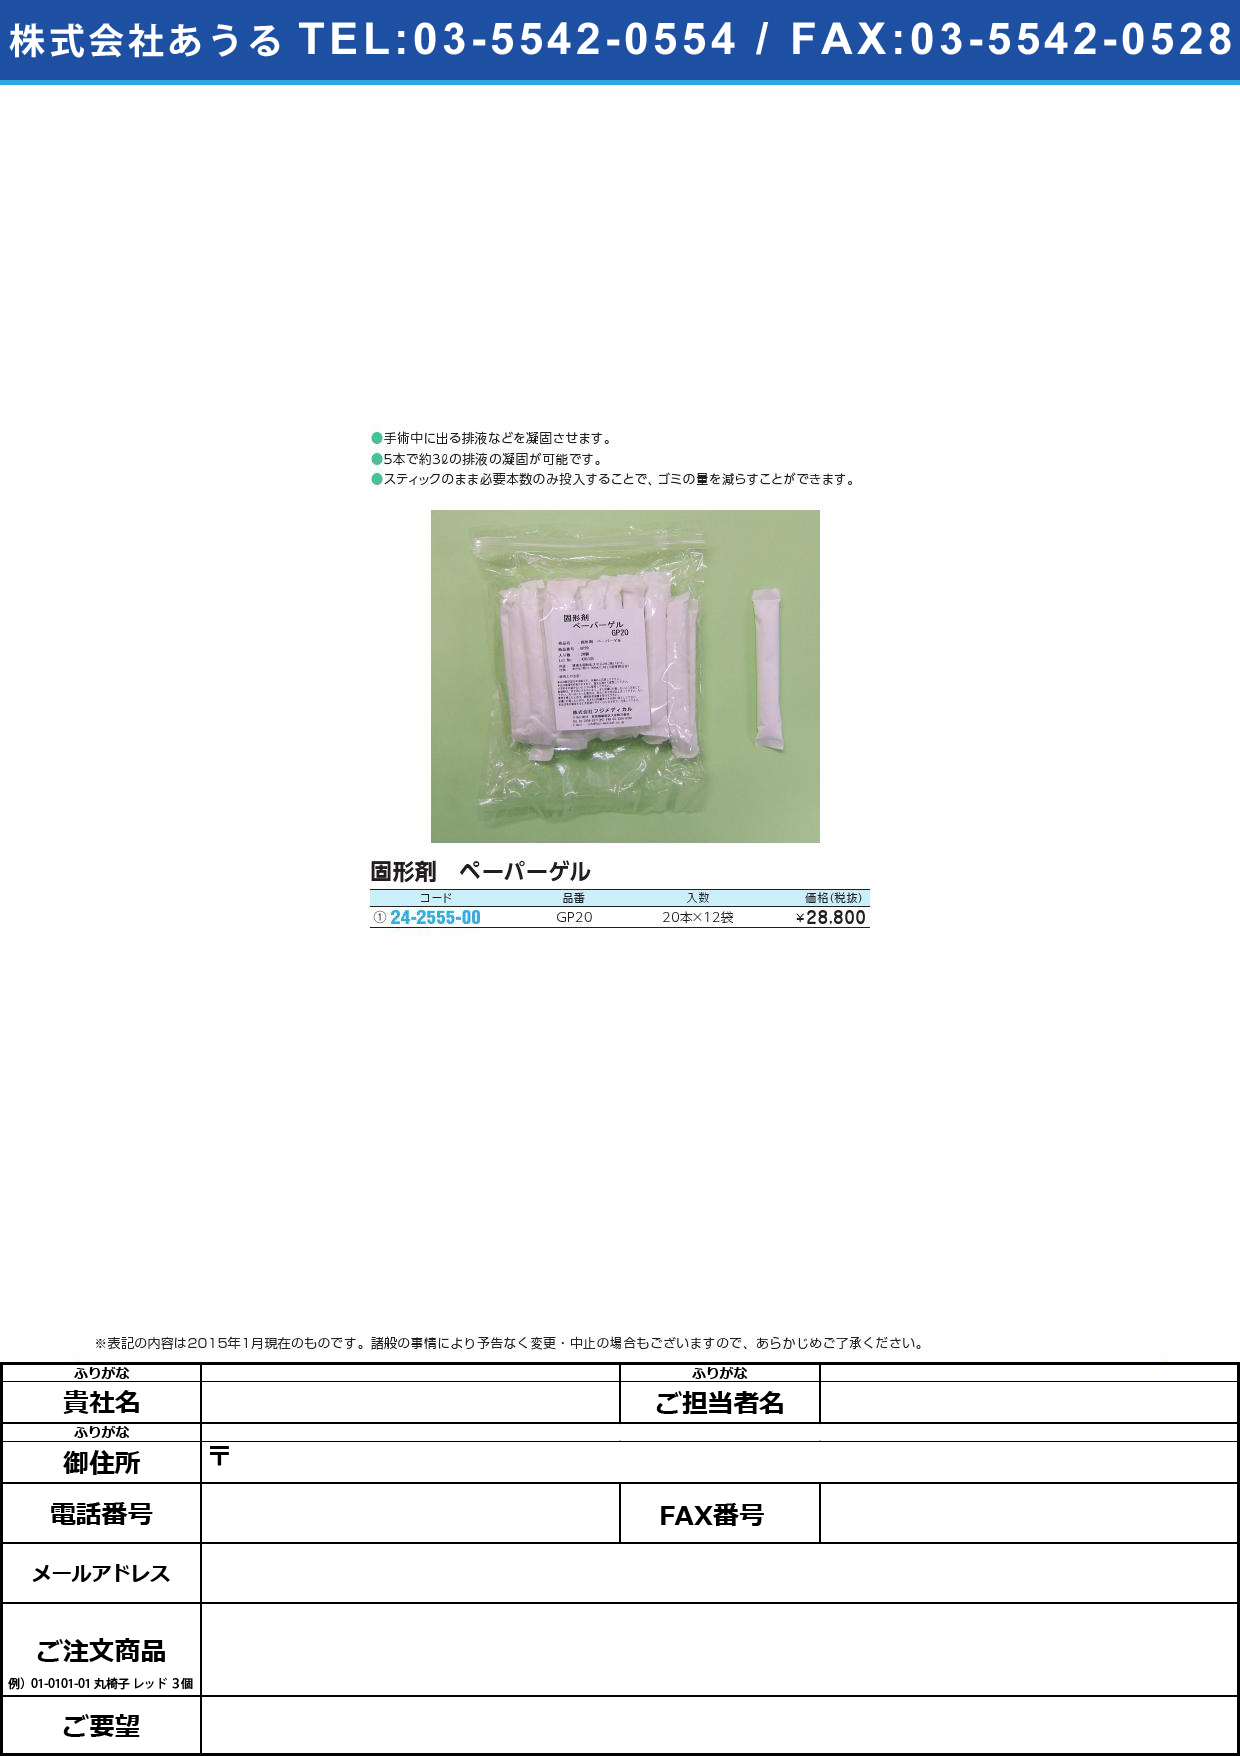 ペーパーゲル（固形剤） ﾍﾟｰﾊﾟｰｹﾞﾙ(ｺｹｲｻﾞｲ)(24-2555-00)GP20(18G)20ﾎﾝX12ﾌｸﾛ【1箱単位】